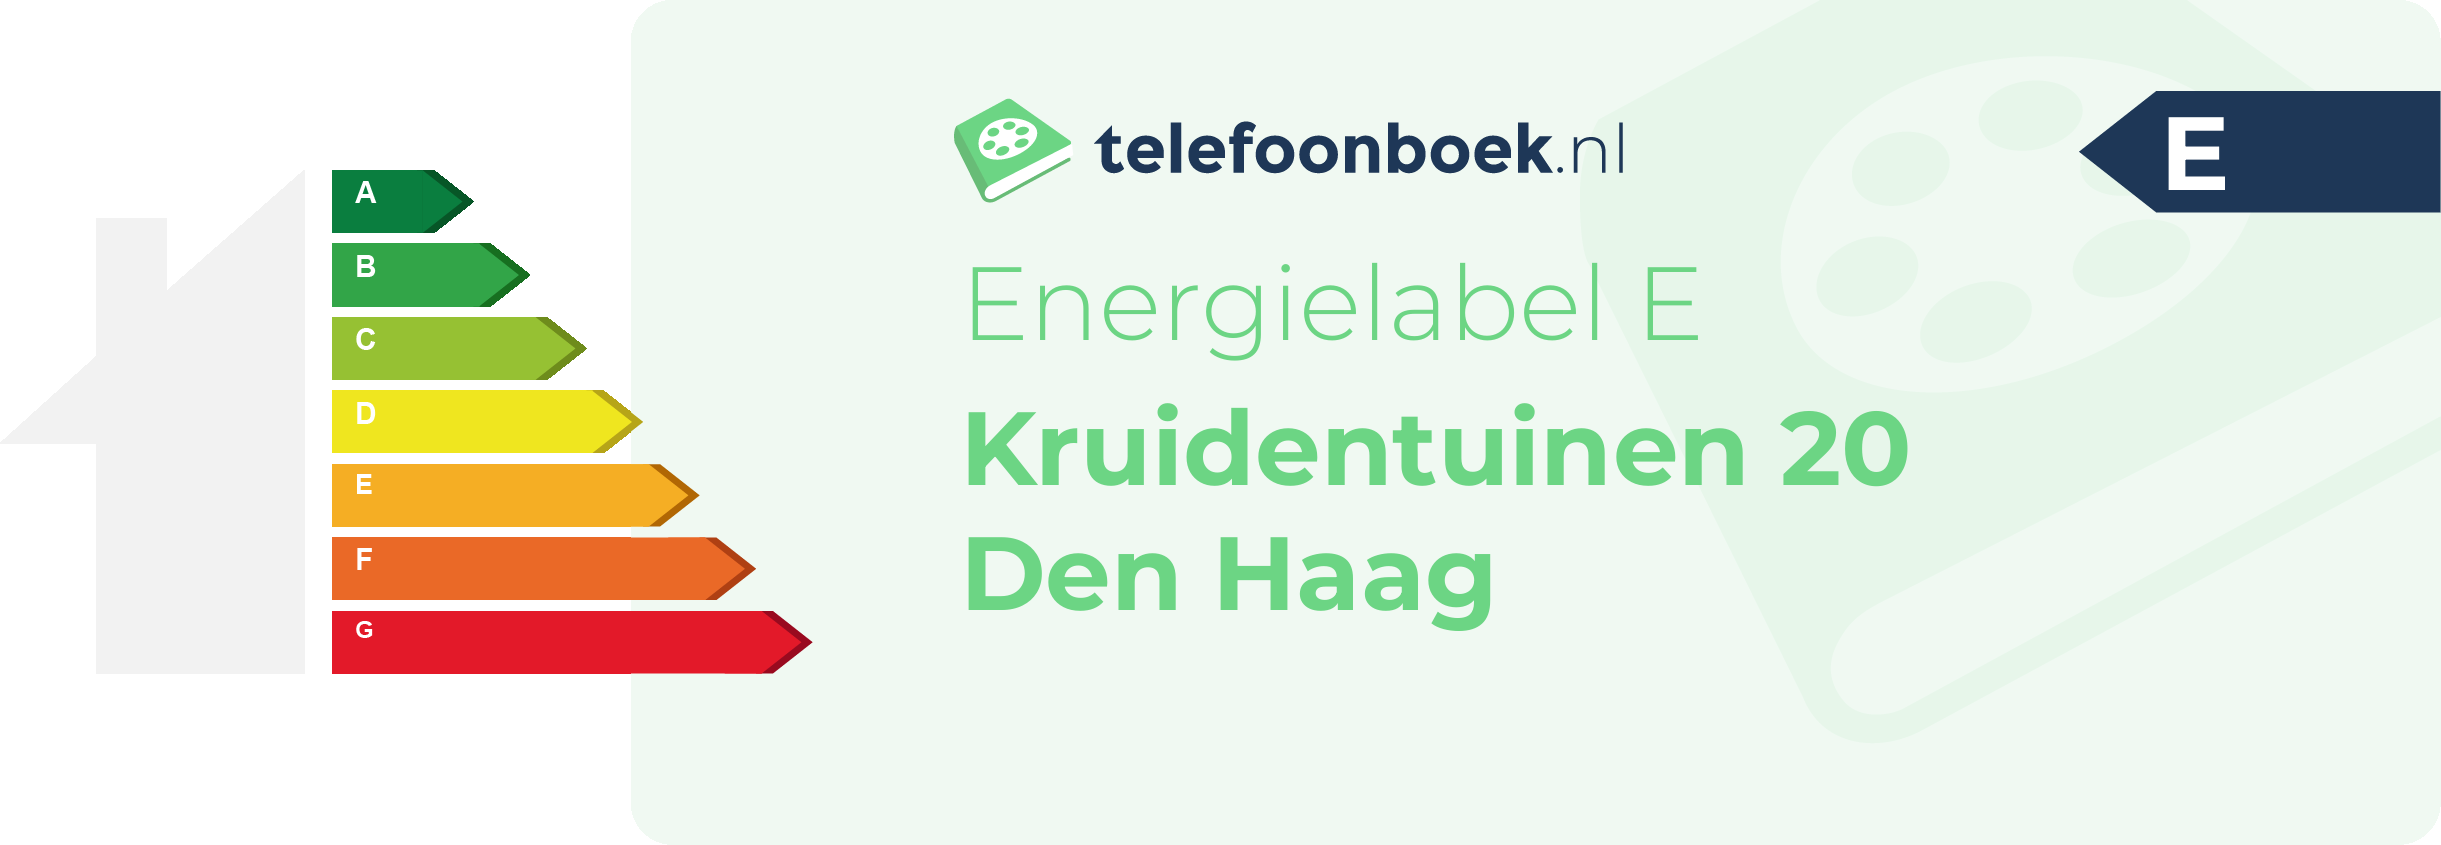 Energielabel Kruidentuinen 20 Den Haag